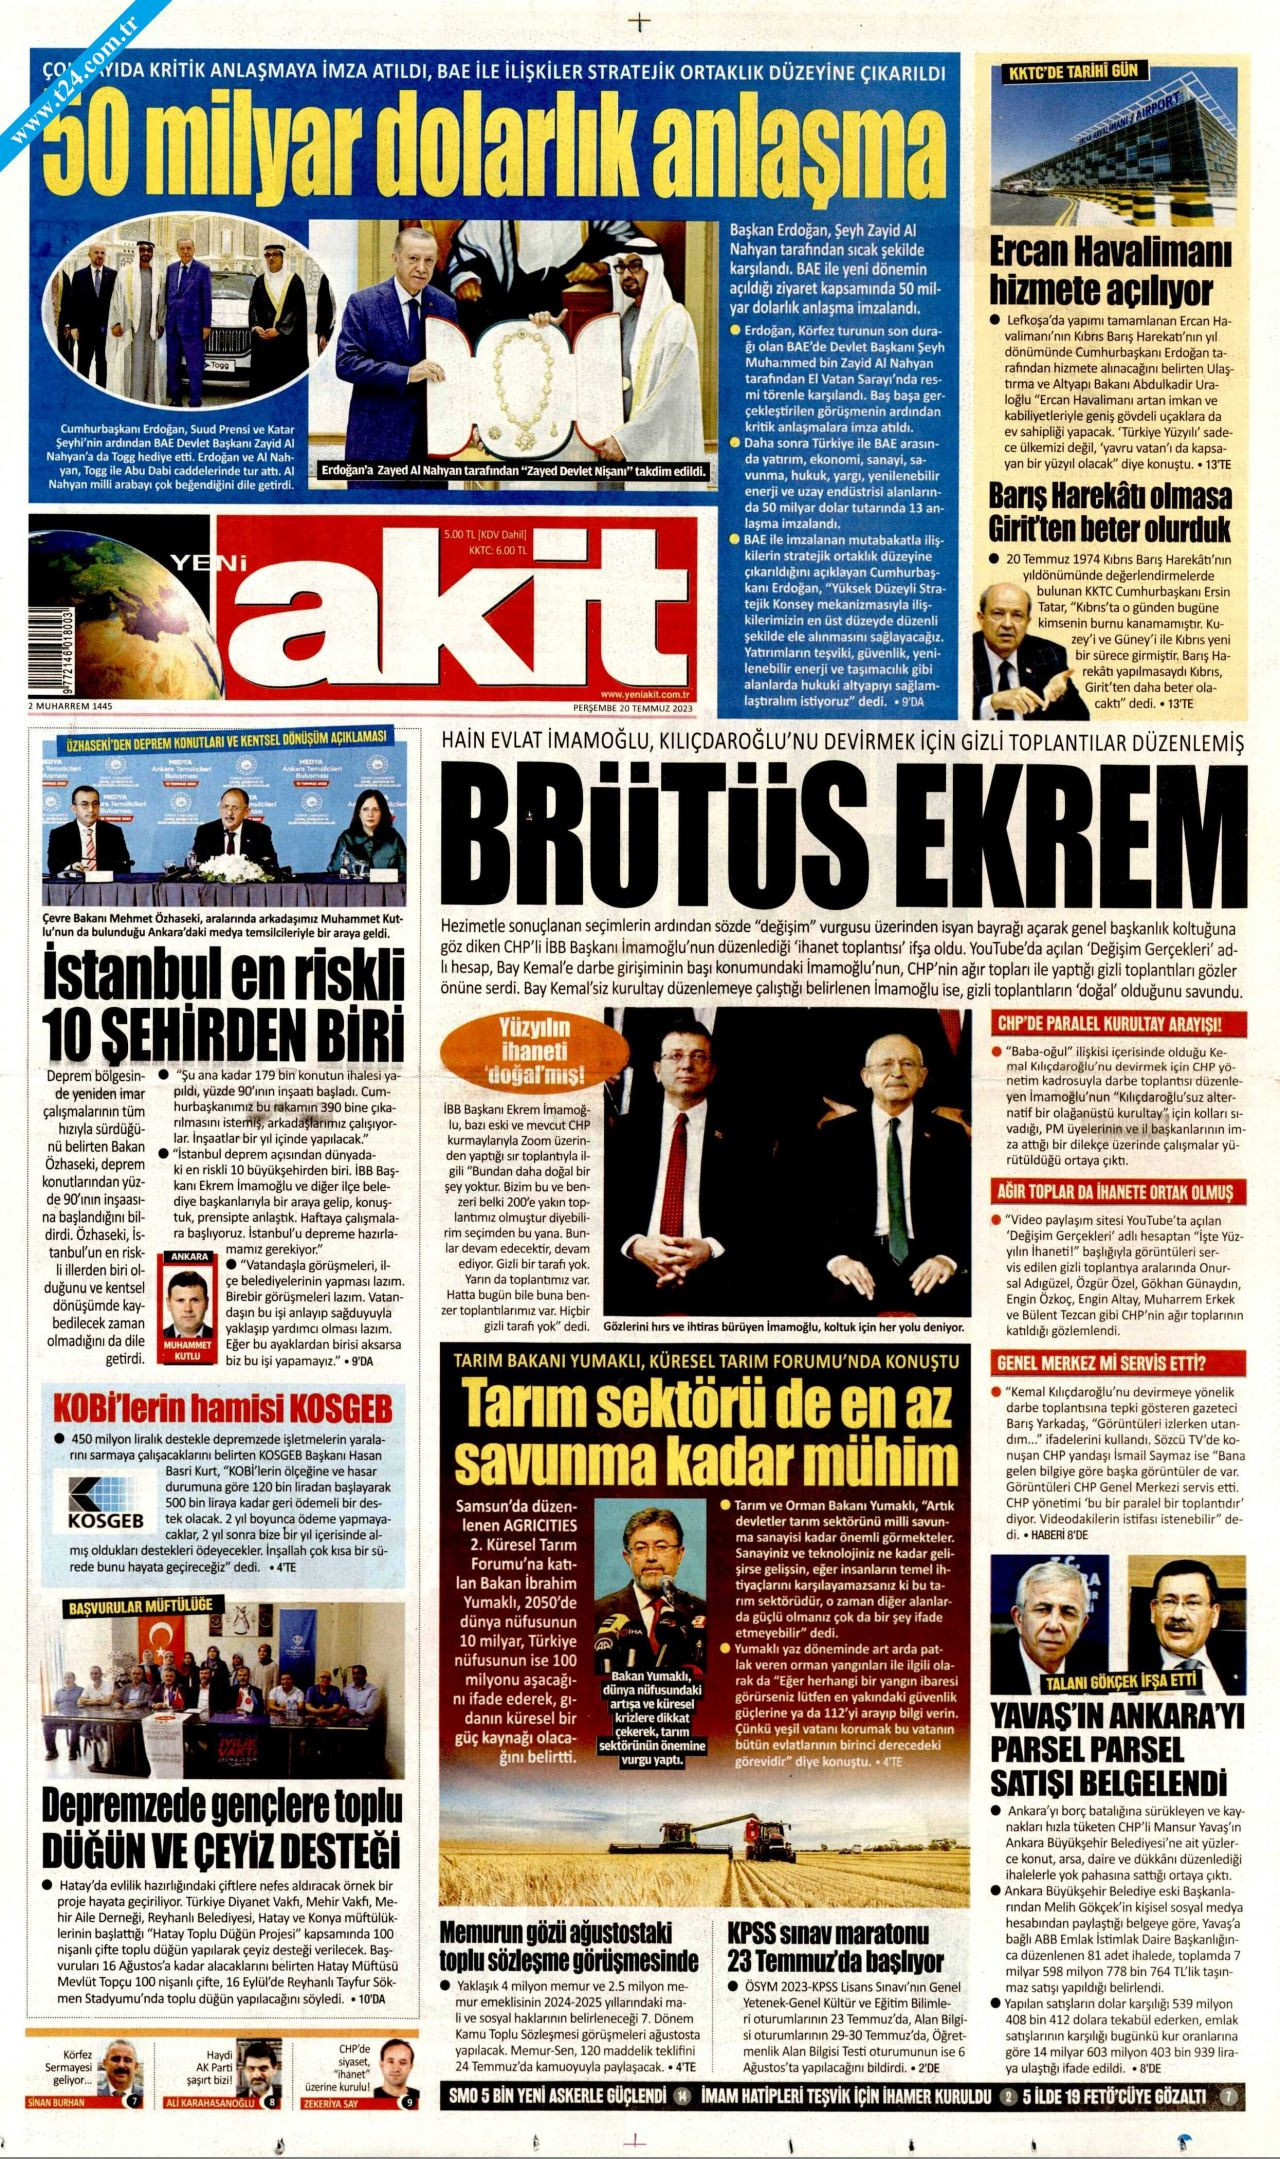 Gazeteler, CHP’lilerin sızdırılan toplantısını manşetlerinde nasıl gördü? - Sayfa 3